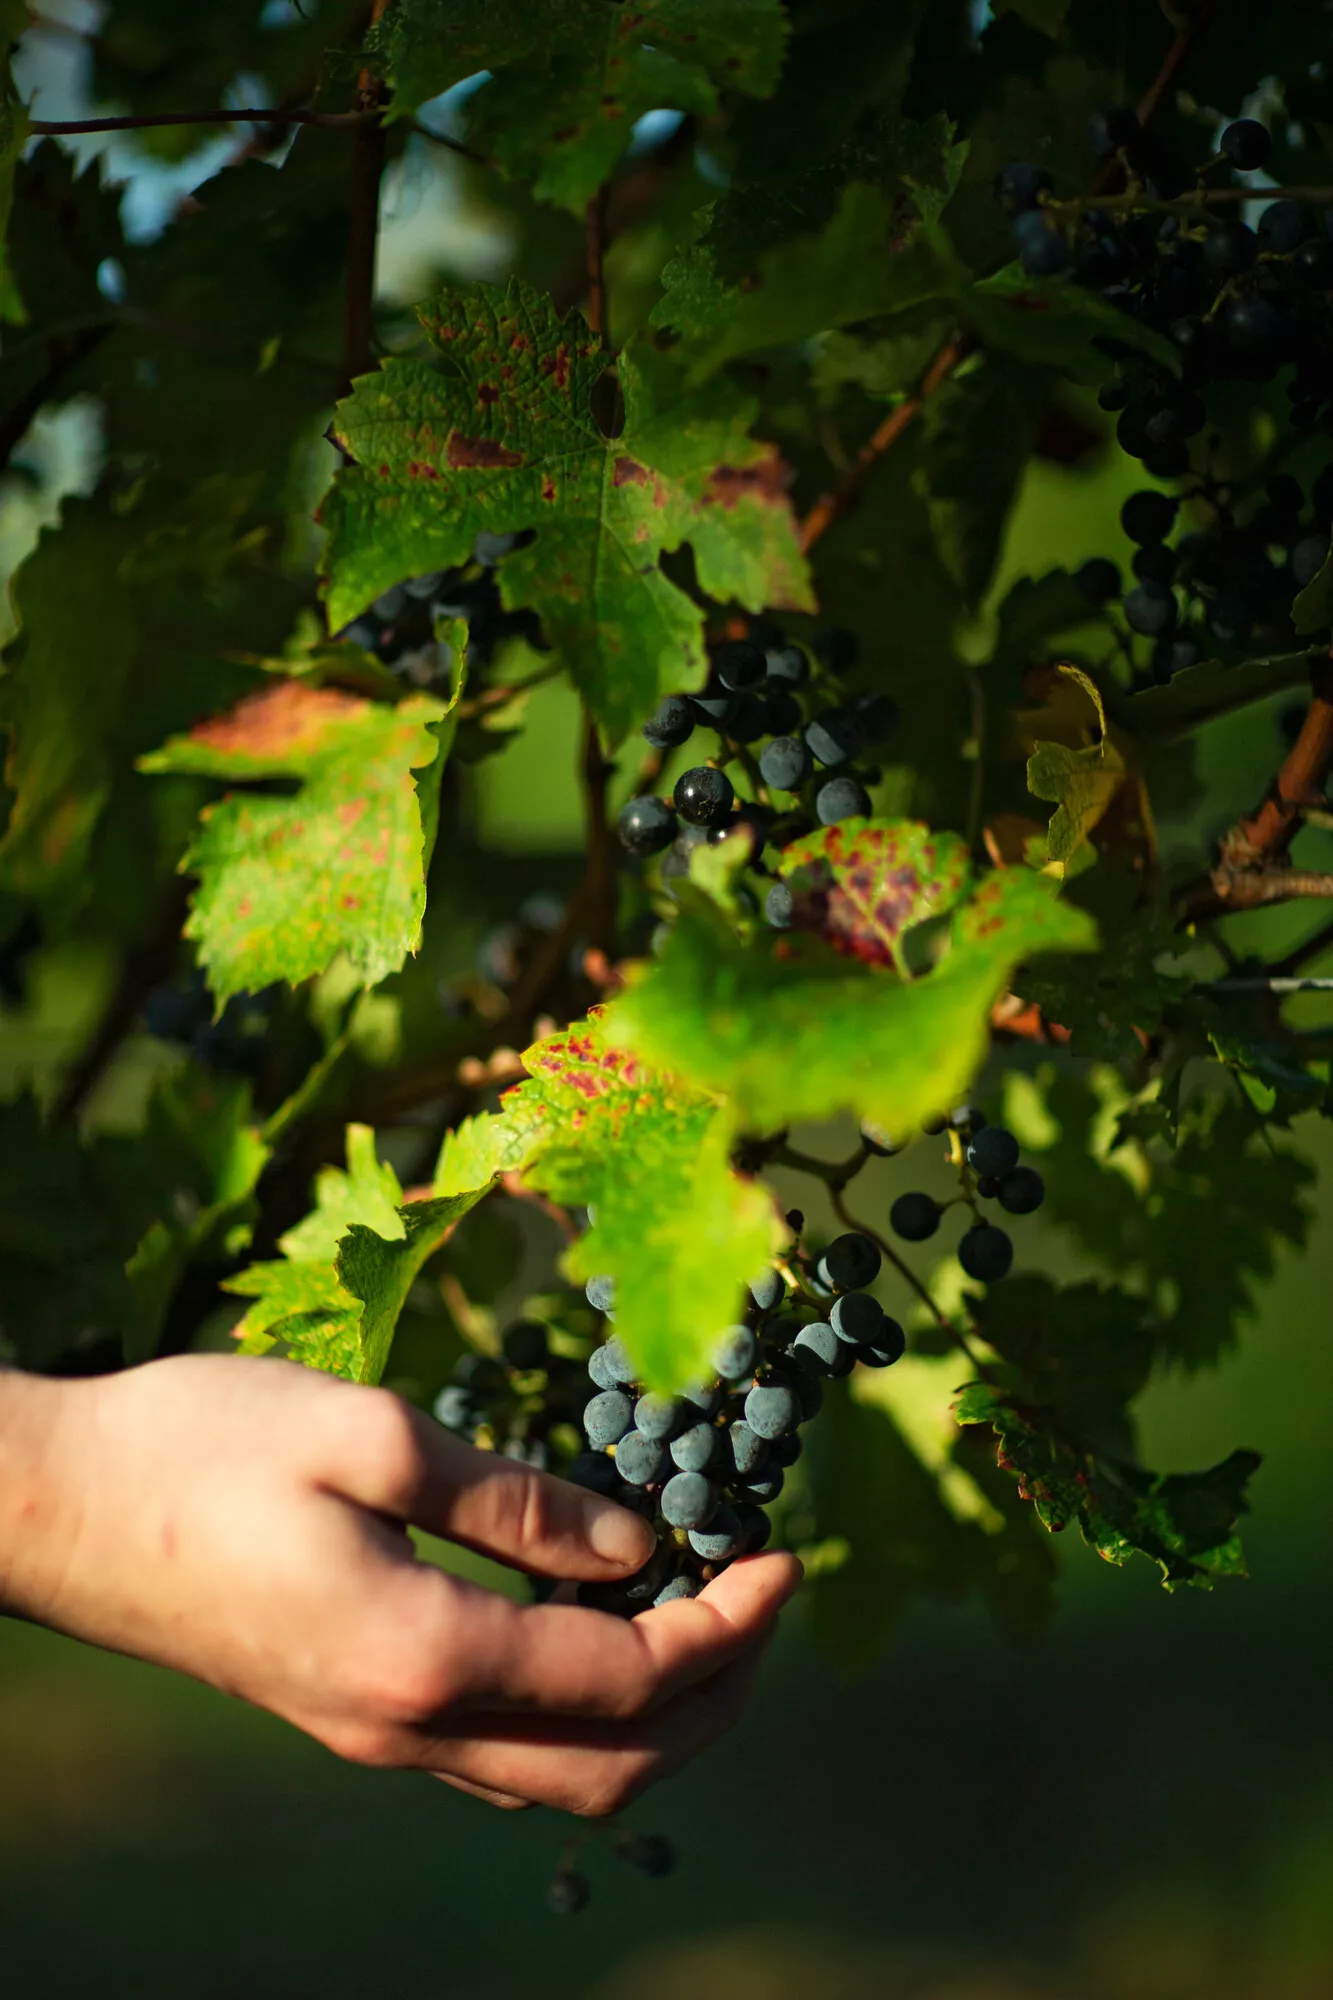  Viinitarhalla viinirypäleet halutaan poimia niiden kypsyyden kannalta juuri oikeana päivänä. Siksi viinitilalla käydään eri viinitarhat läpi päivittäin sadonkorjuun aikaan.   